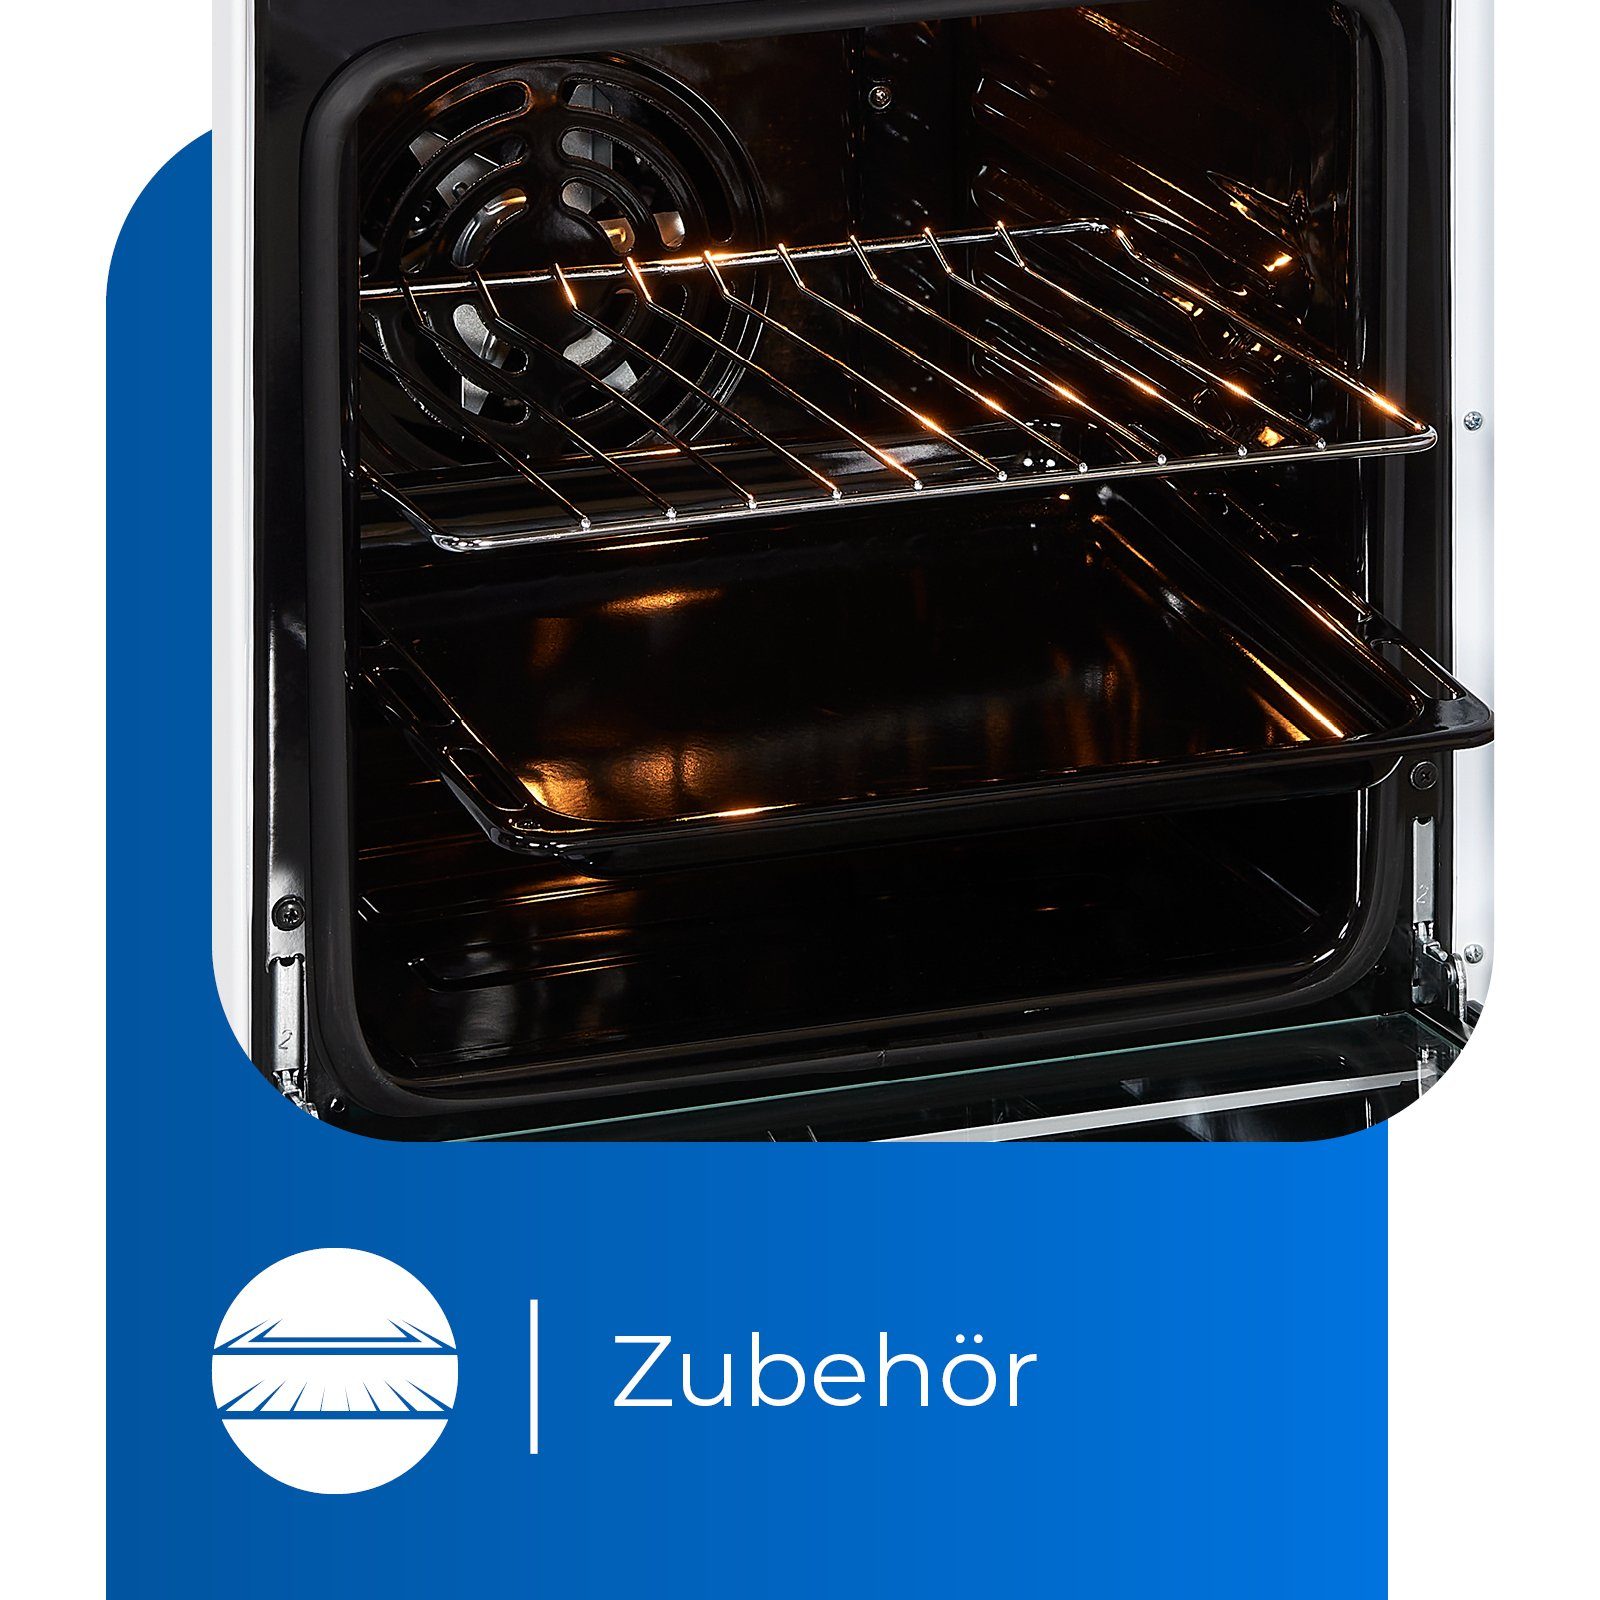 ideal exquisit Elektro-Standherd für weiß & flexibles Kochen Bräterzone Umluft, 5-4 ECM Grill, 2-Kreisbräter BZ,